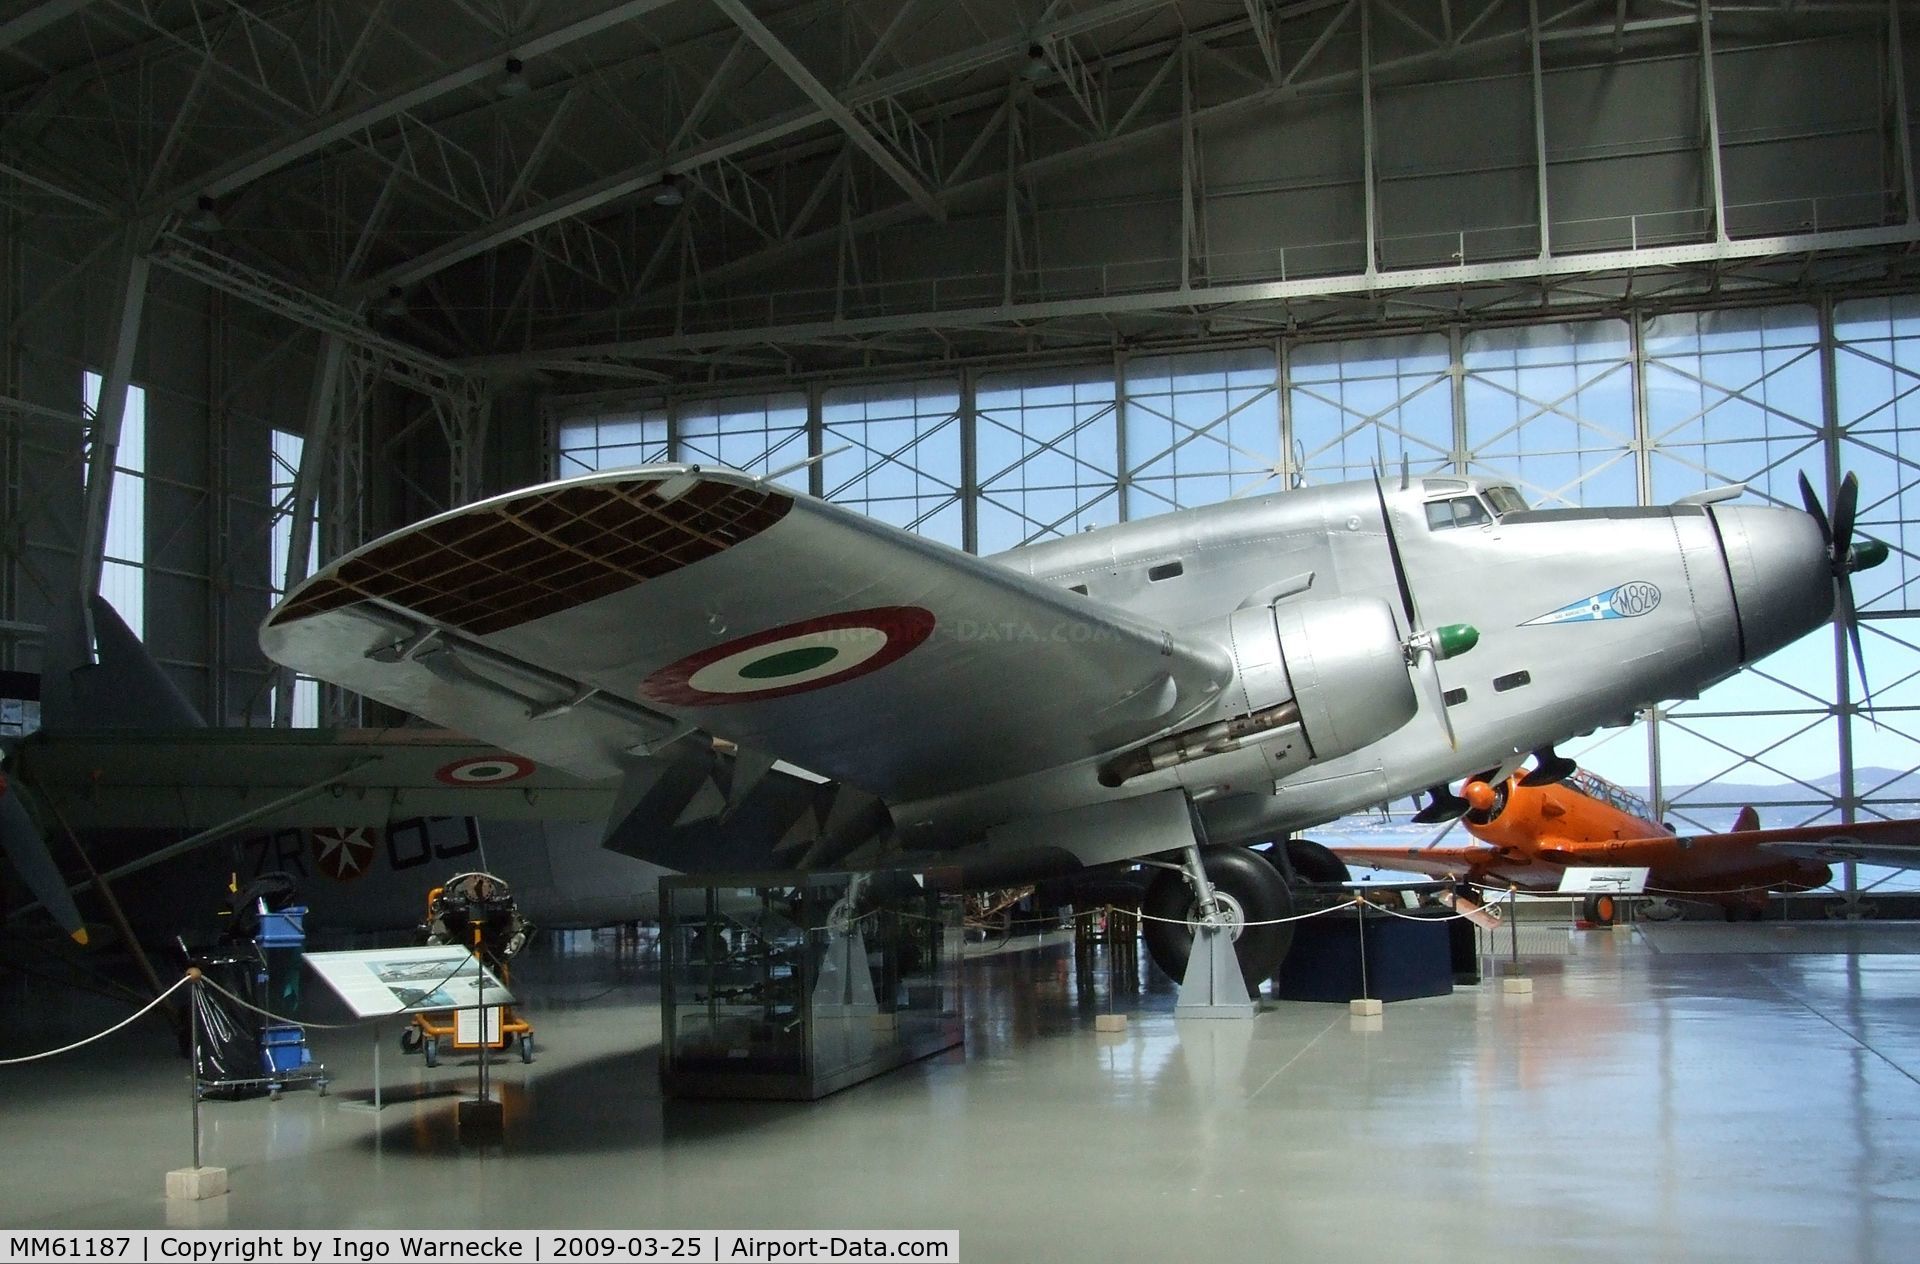 MM61187, Savoia-Marchetti SM-82PW C/N 14, Savoia-Marchetti SM.82PW Marsupiale at the Museo storico dell'Aeronautica Militare, Vigna di Valle